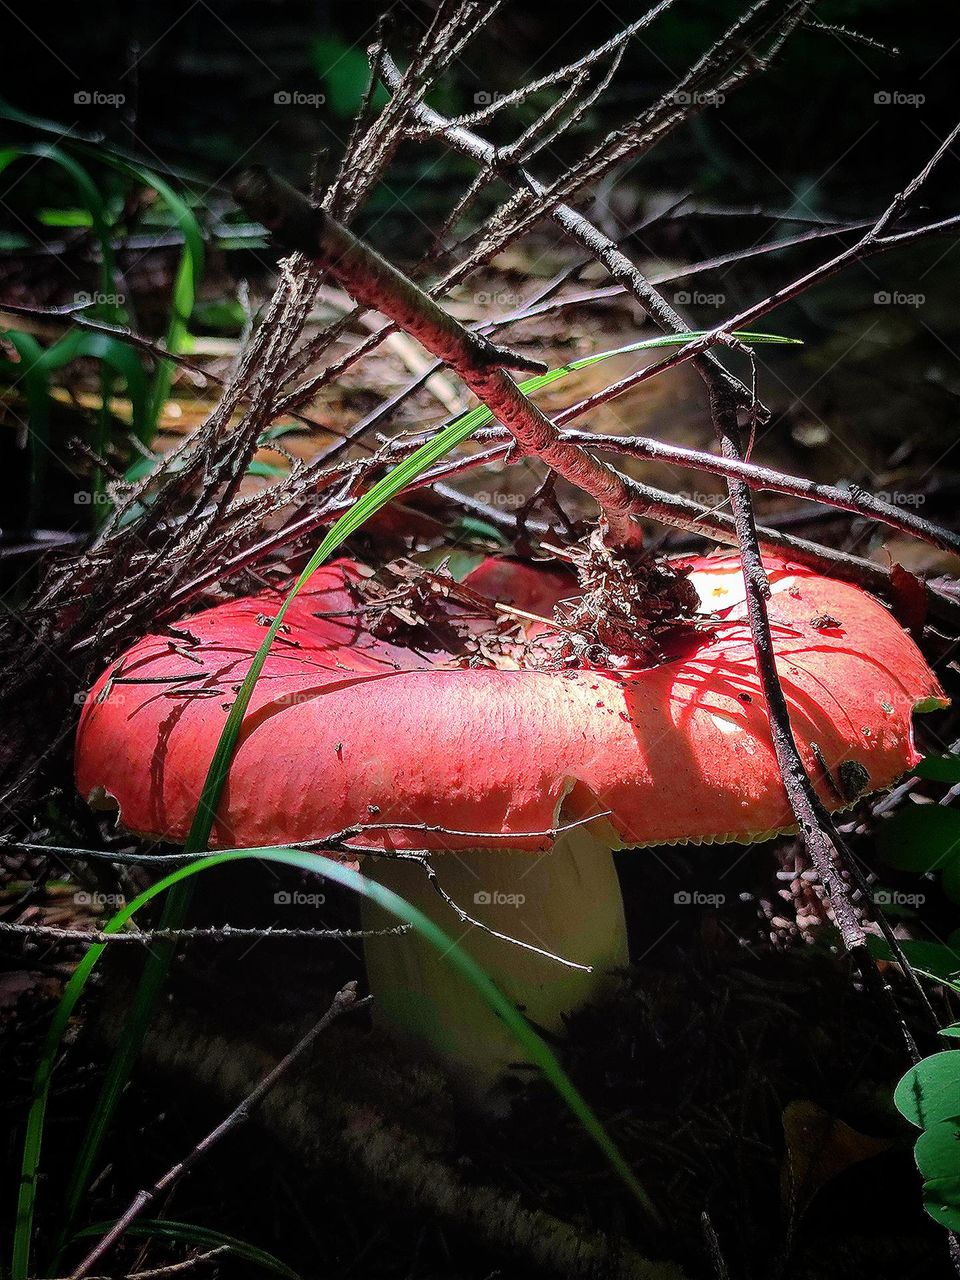 Mushrooms.  Russula in the grass.  Sunlight falls on a red mushroom cap